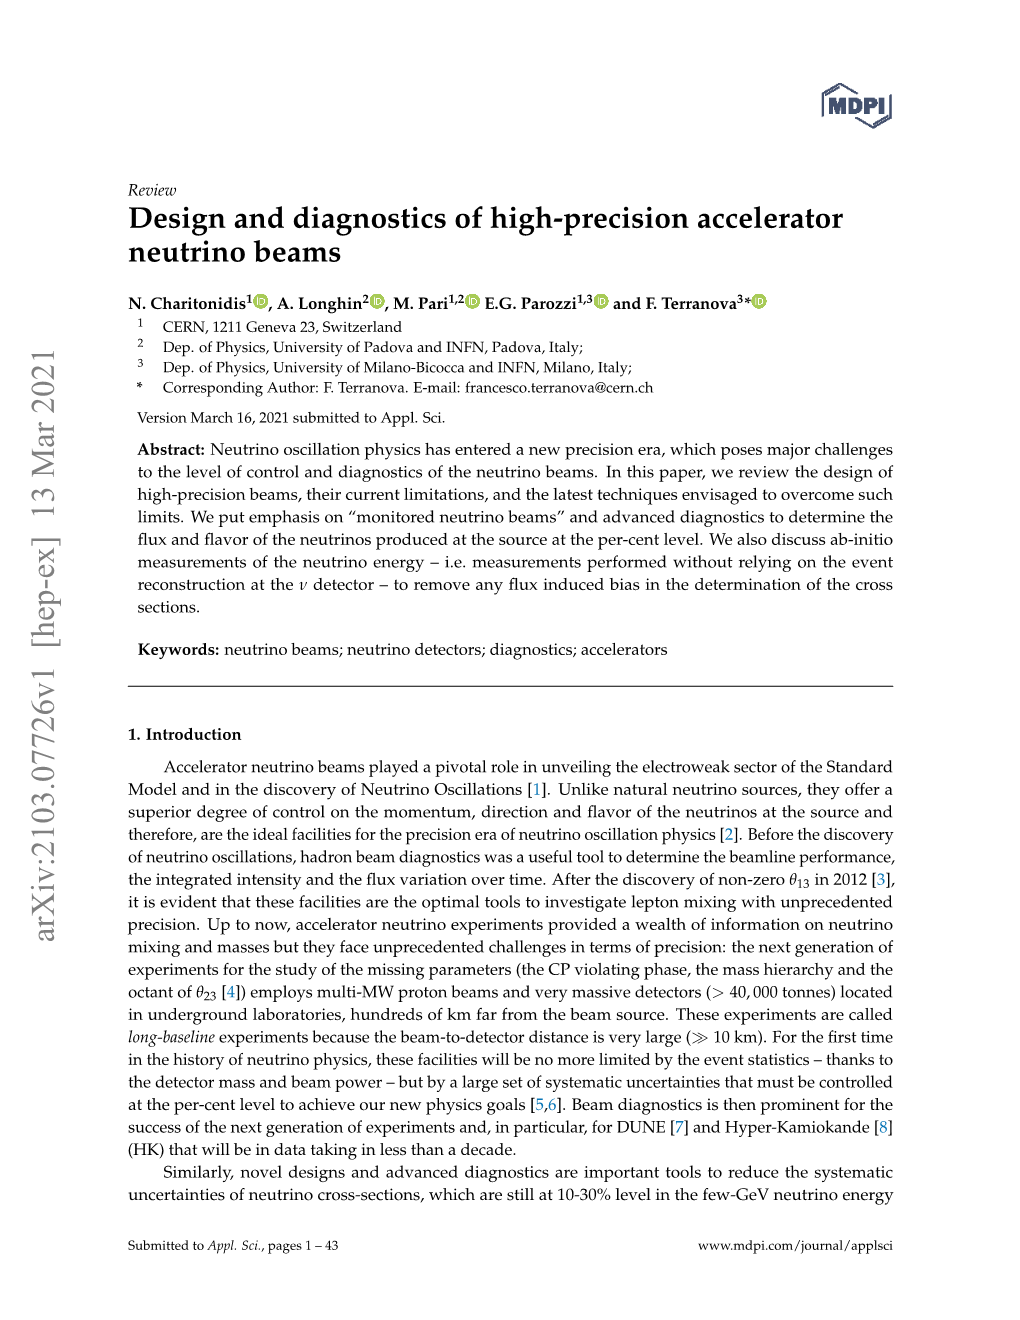 Design and Diagnostics of High-Precision Accelerator Neutrino Beams